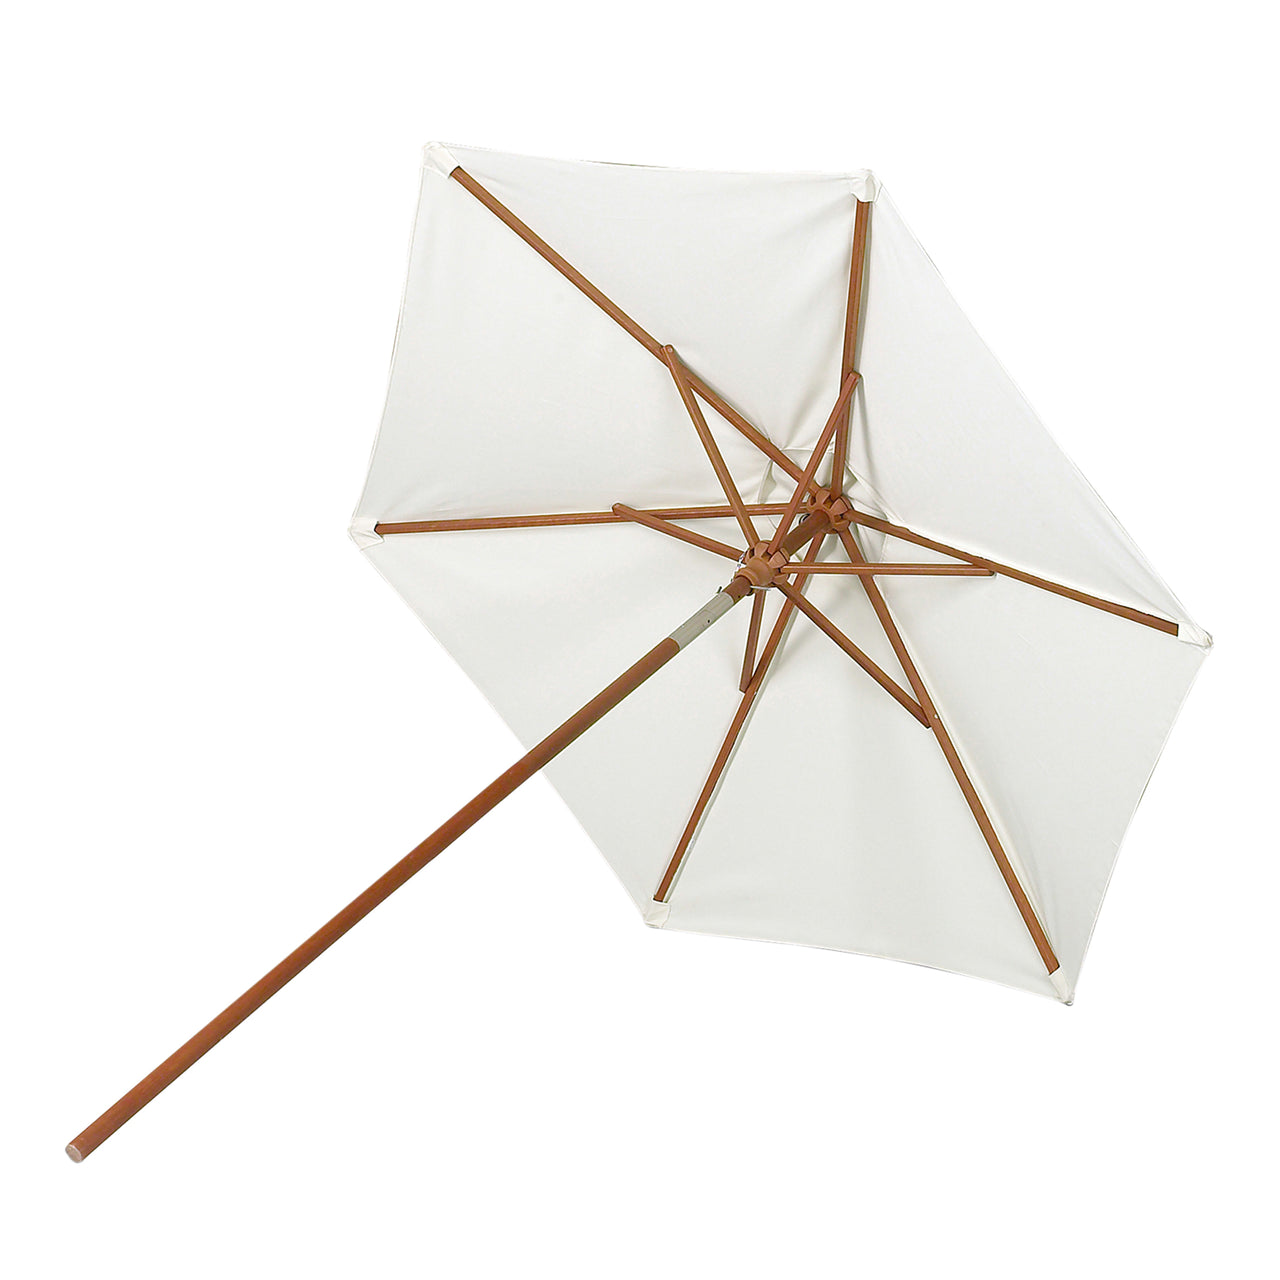 Messina Umbrella: Round